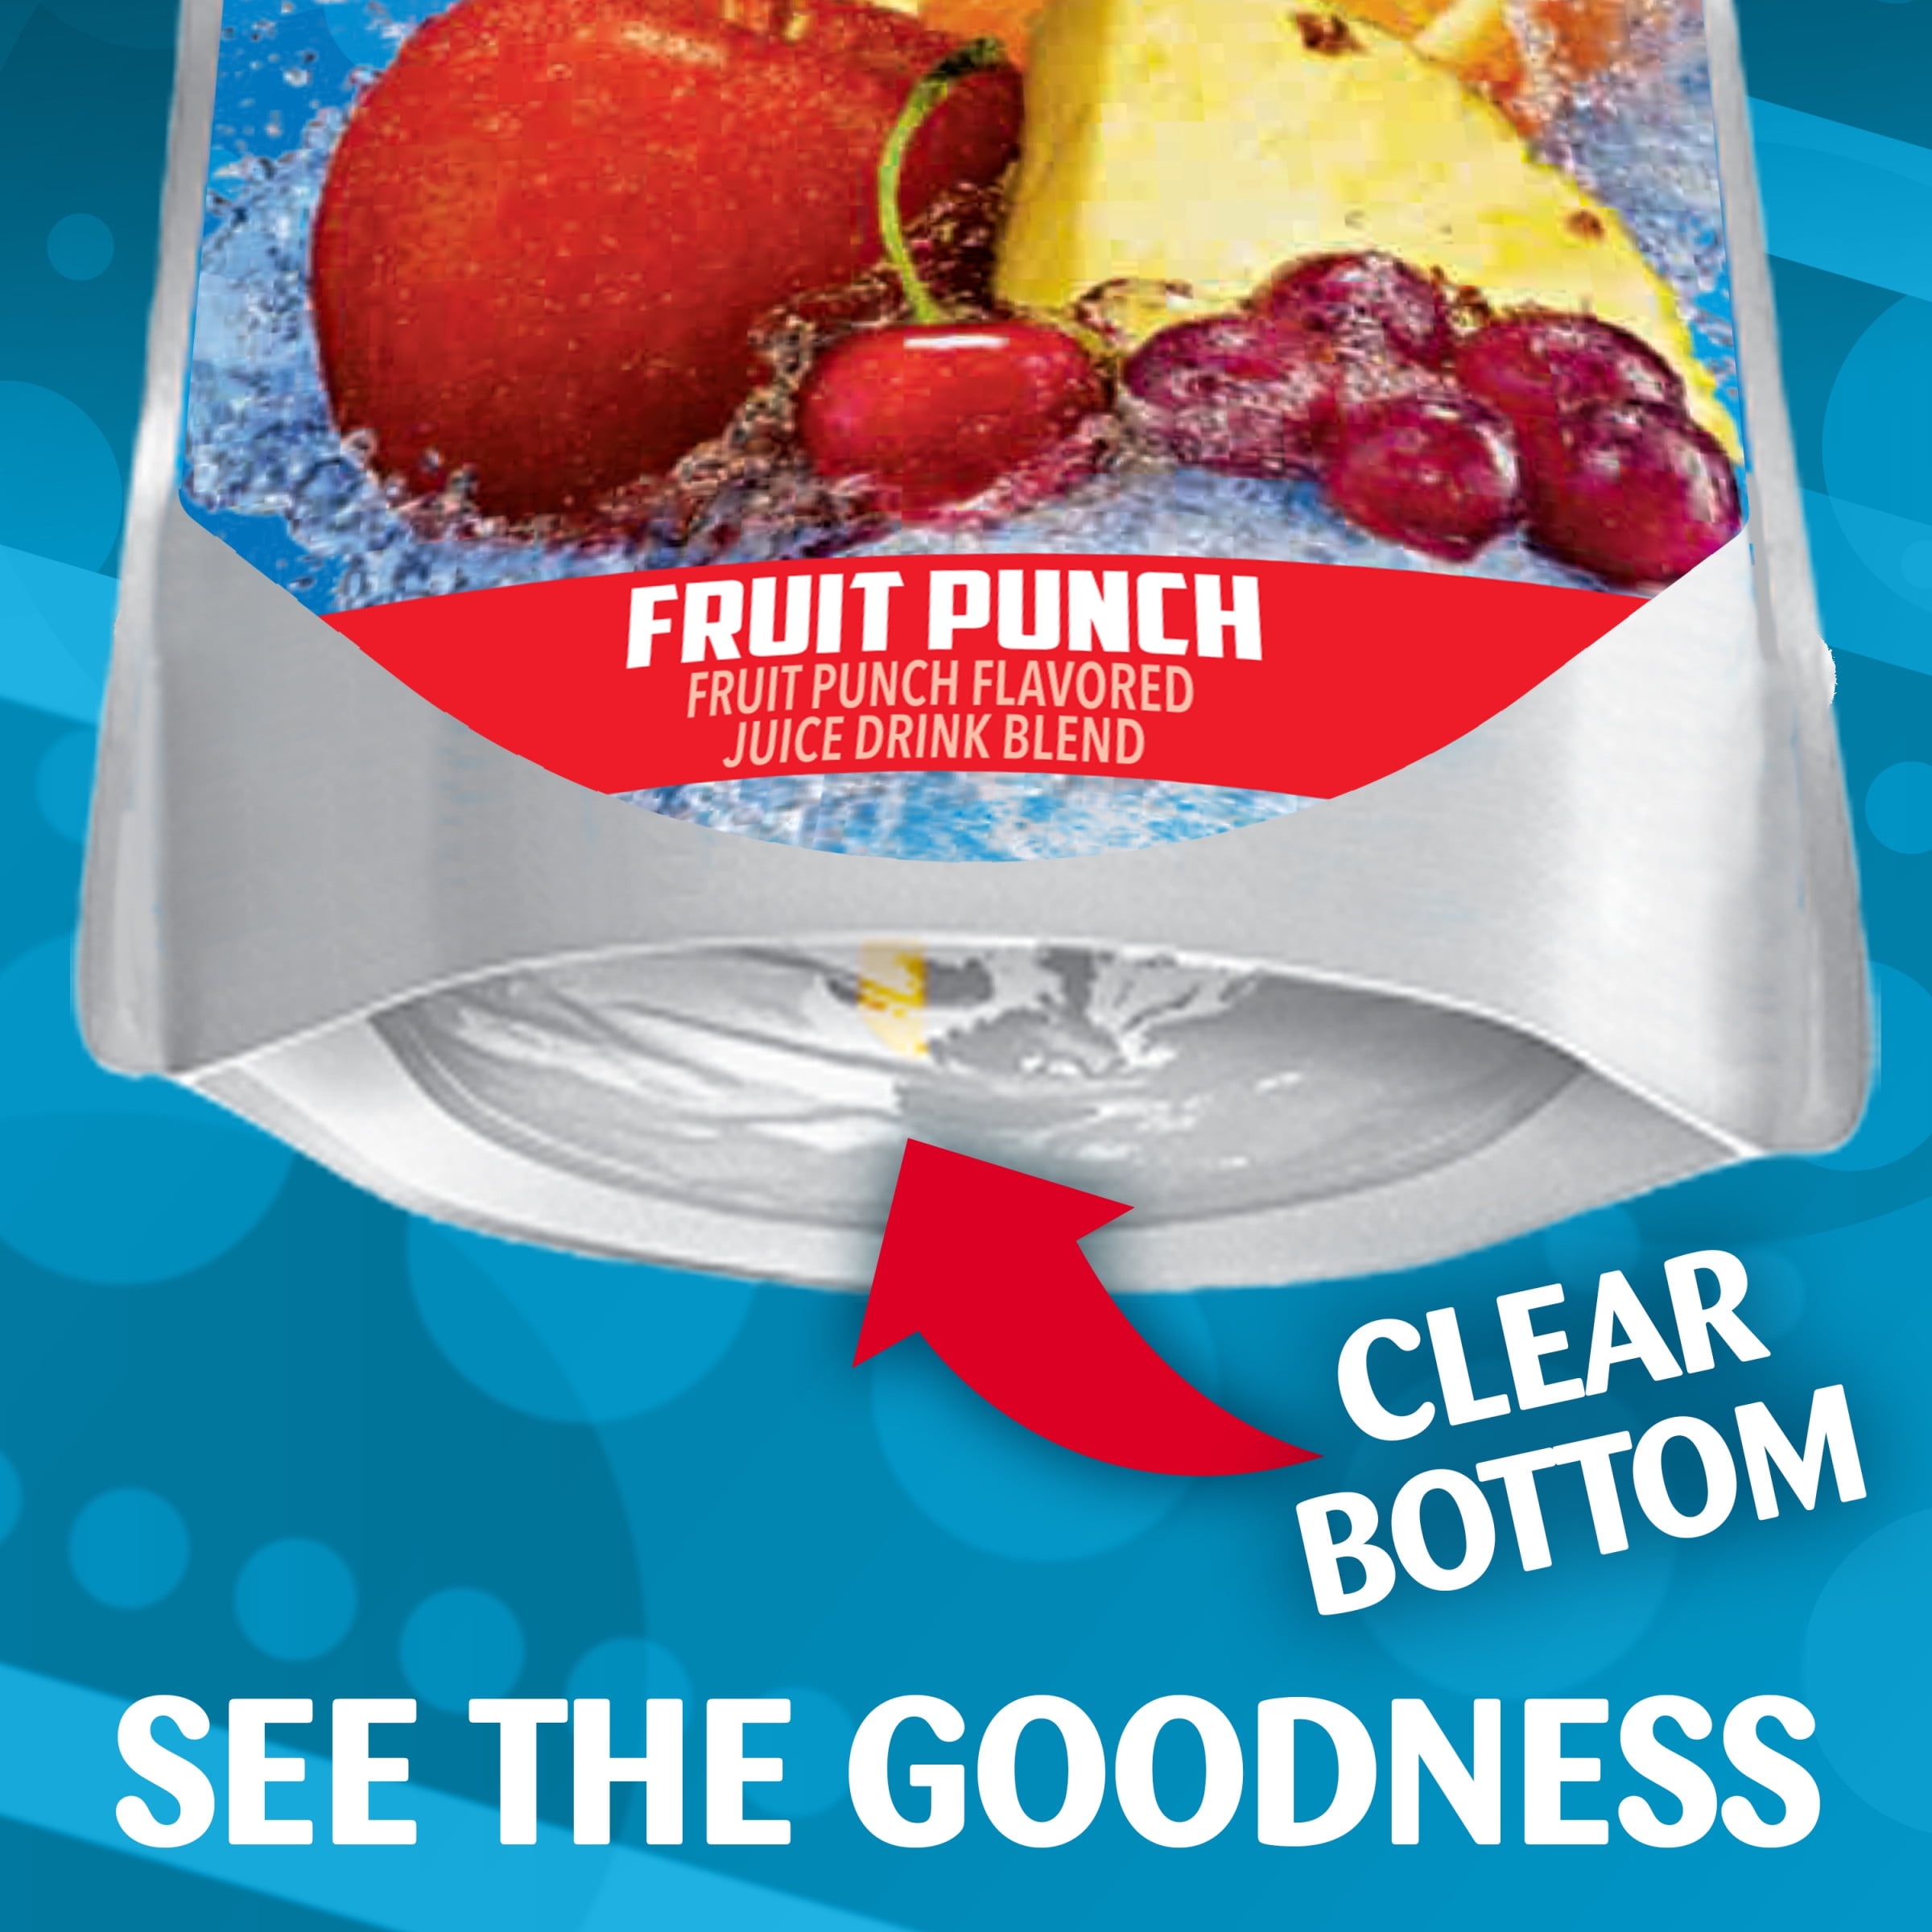 Capri Sun Fruit Punch Juice Drink Blend, 30 ct Box, 6 fl oz Pouches